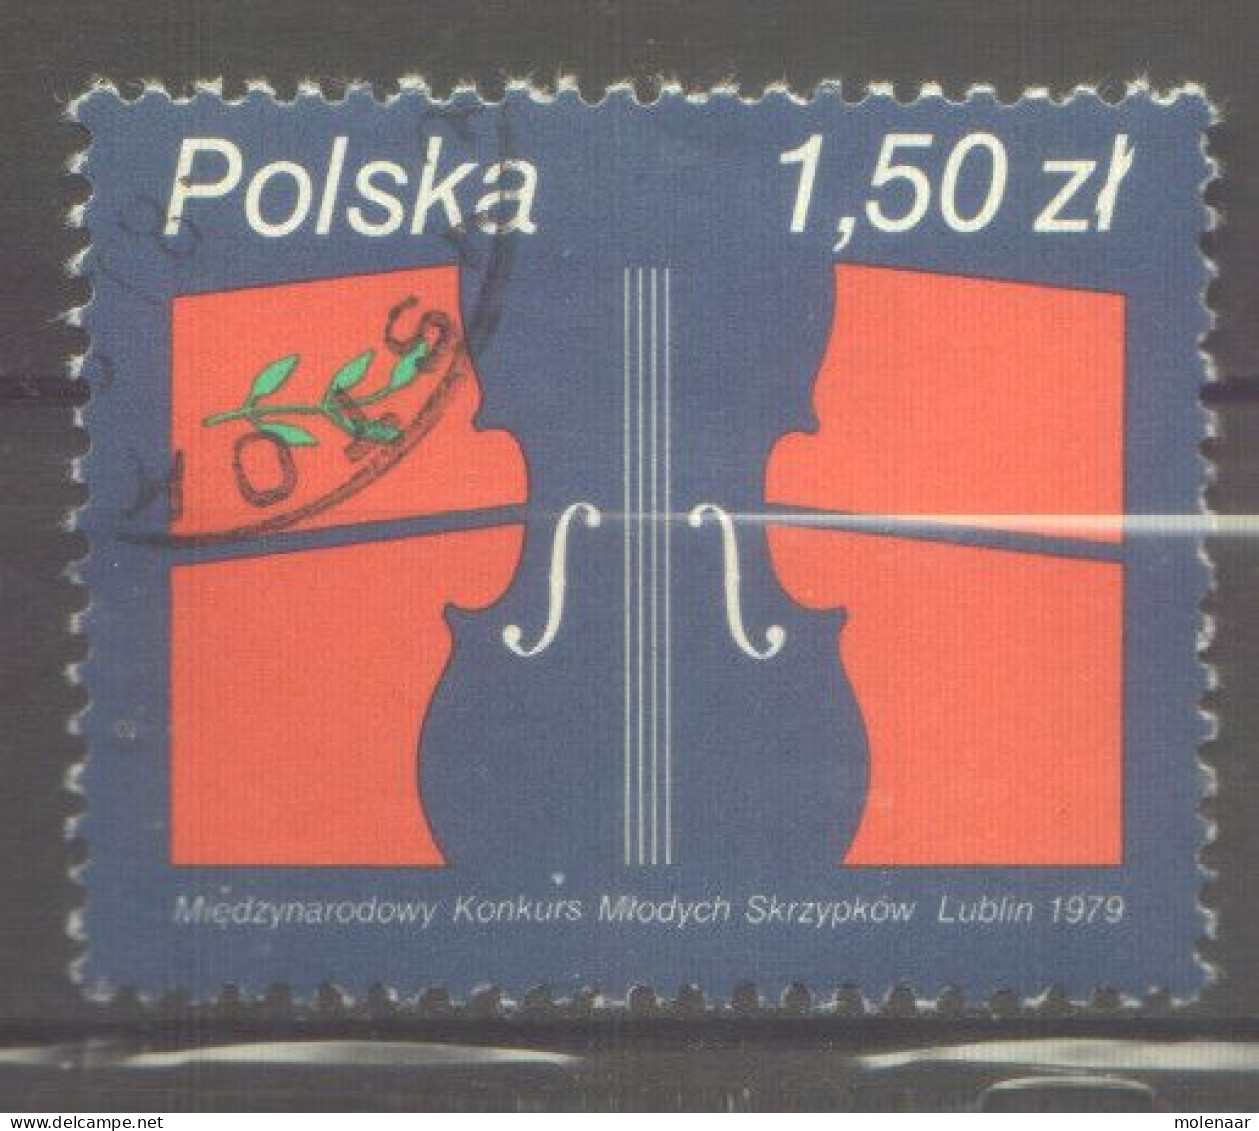 Postzegels > Europa > Polen > 1944-.... Republiek > 1971-80 > Gebruikt  2643 (12174) - Usados